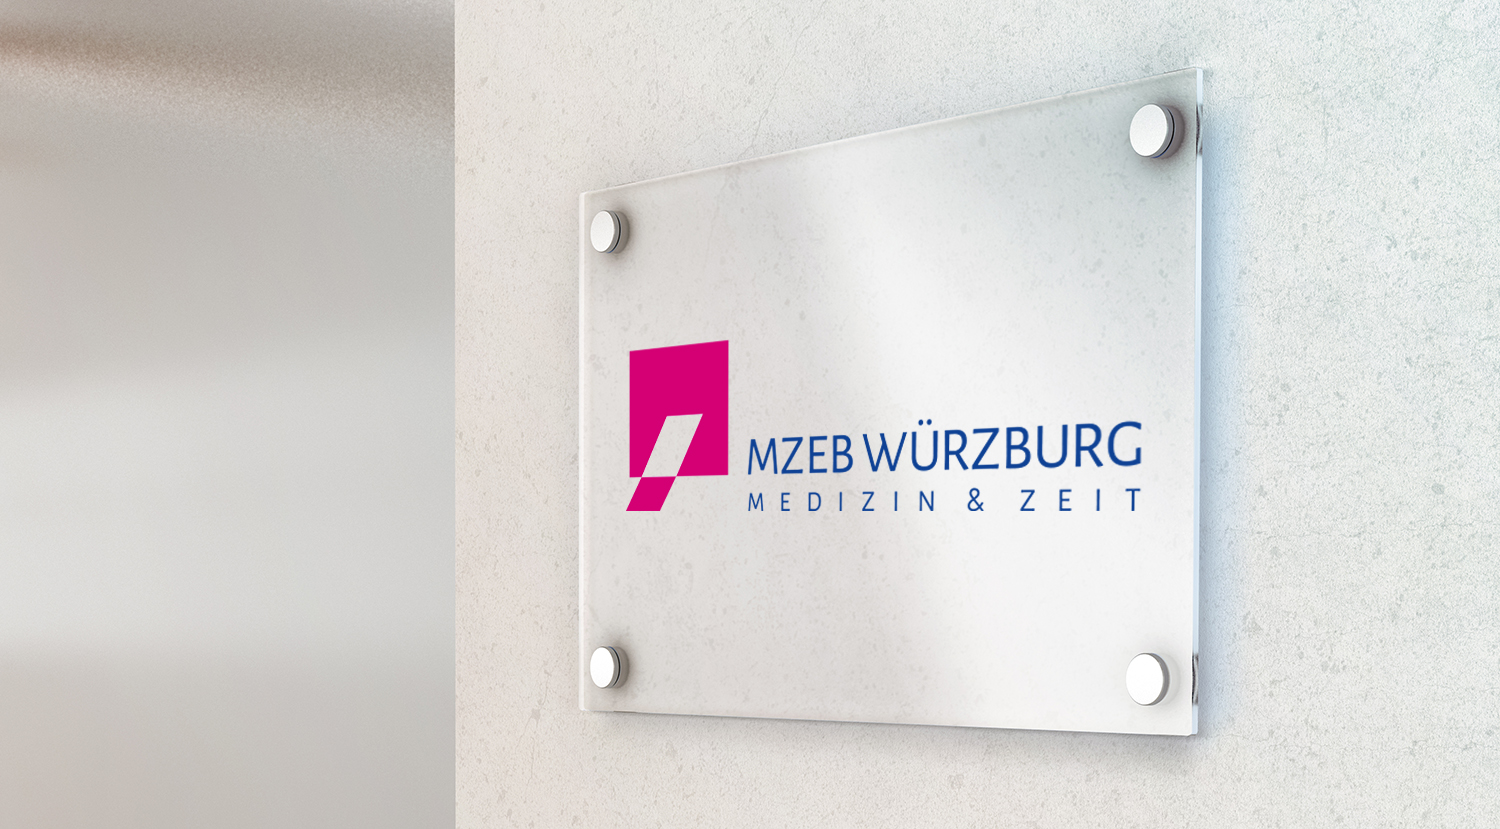 Logogestaltung und Corporate Design für das Medizinische Zentrum zur Behandlung Erwachsener mit Behinderung (MZEB) Würzburg. Mehr